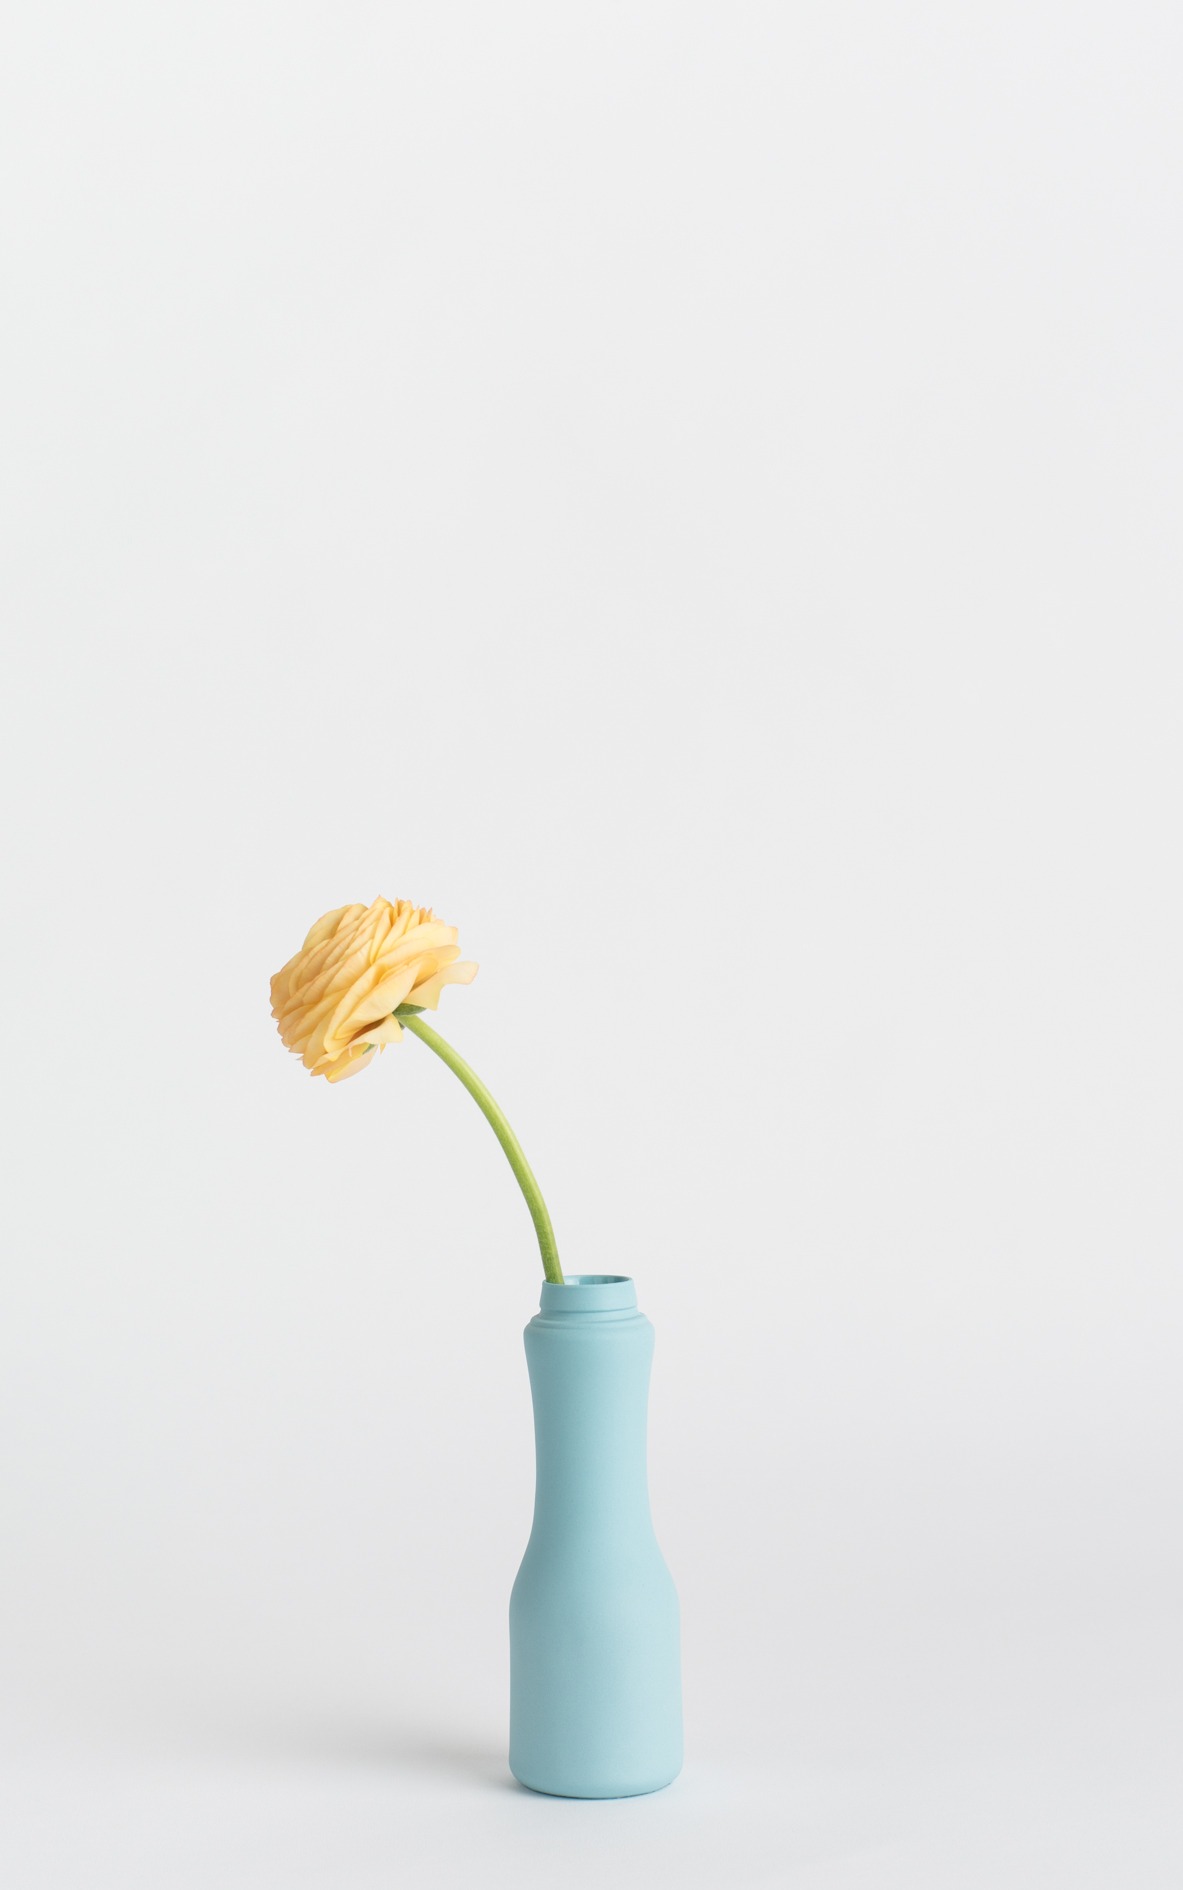 bottle vase #6 light blue with flower